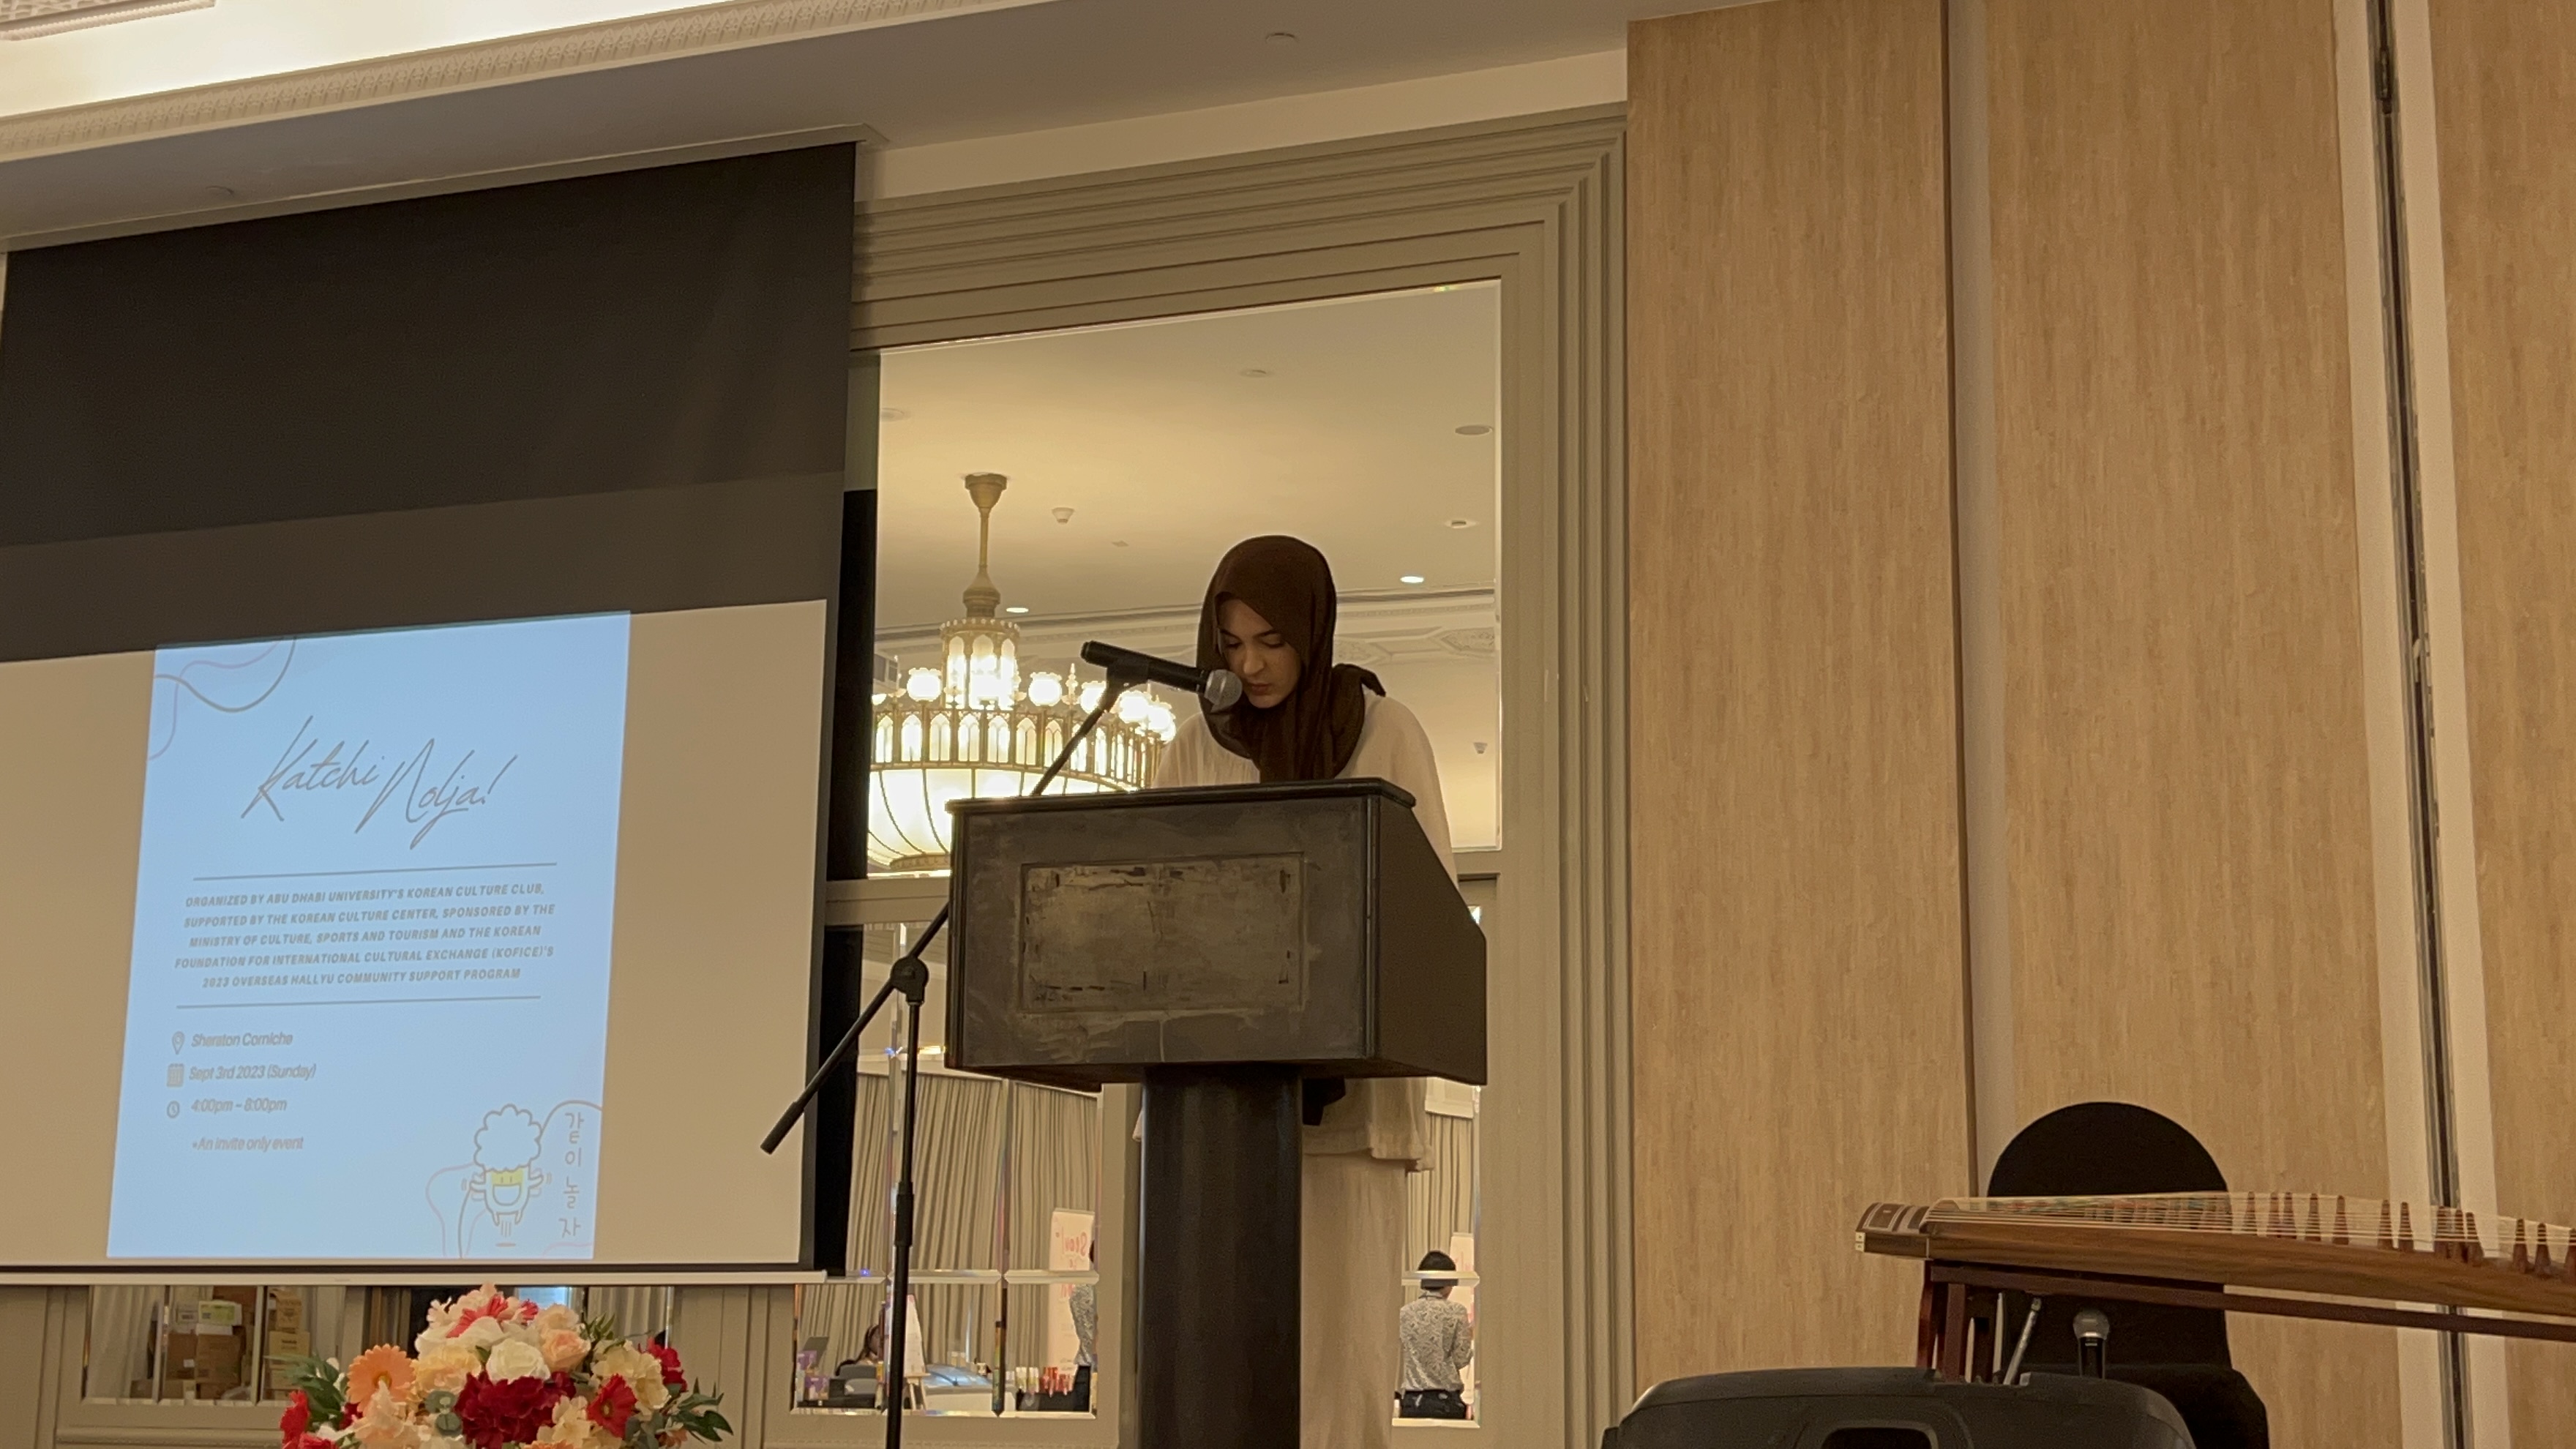 < 행사 주최 한류 동아리 회장인 잔나 압둘자와드 씨의 모습 - 출처: 통신원 촬영 >